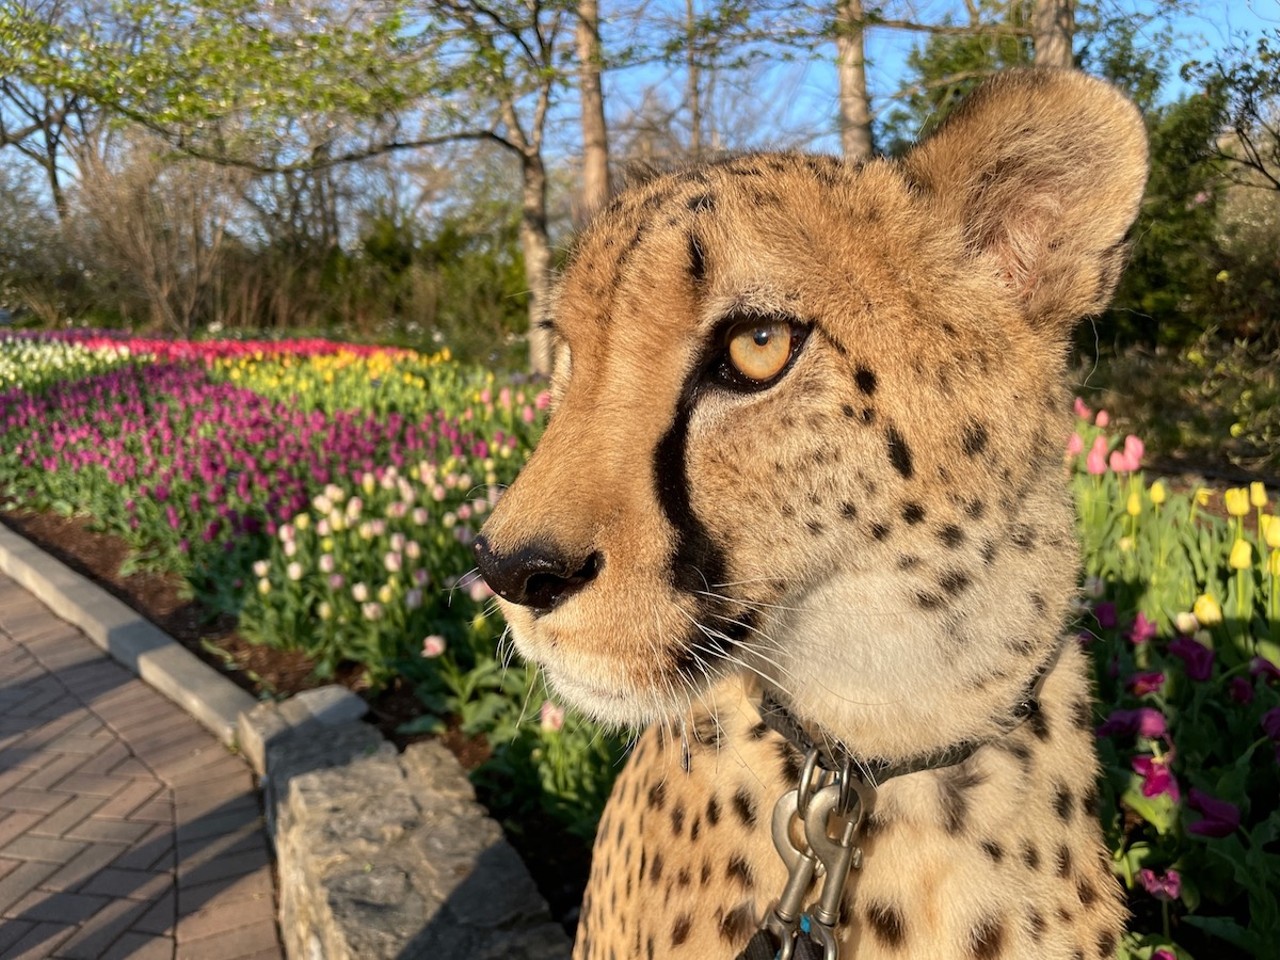 Cincinnati Zoo & Botanical Garden Zoo Blooms